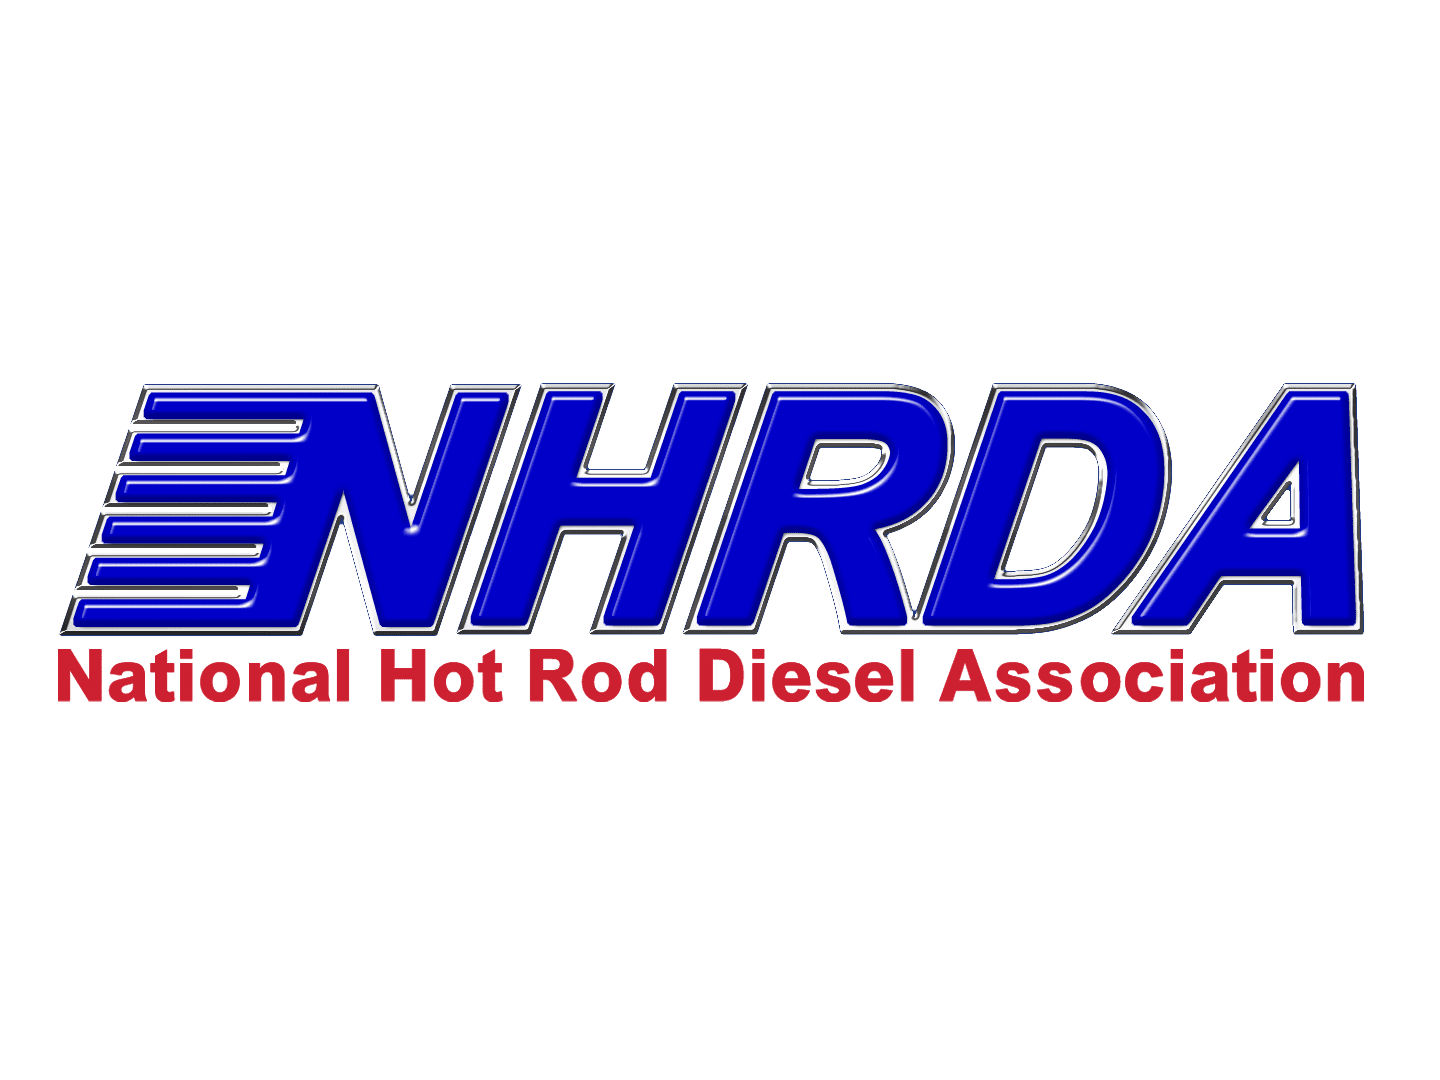 NHRDA logo